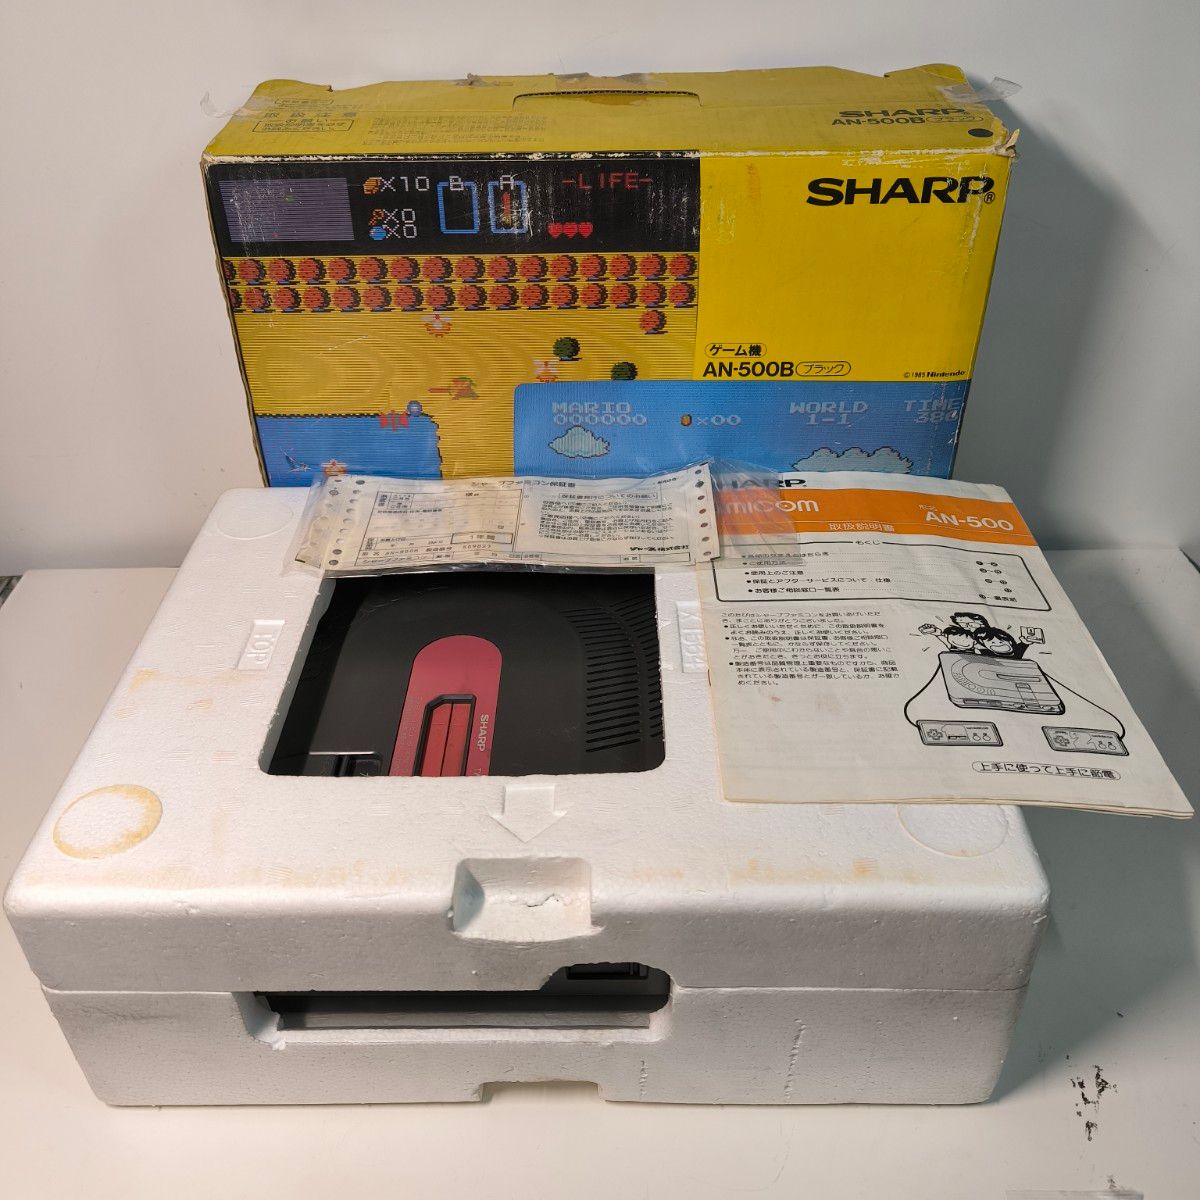 シャープ ツインファミコン AN-500B 箱 説明書 付属品付き 整備品 任天堂 ファミコン ディスクシステム